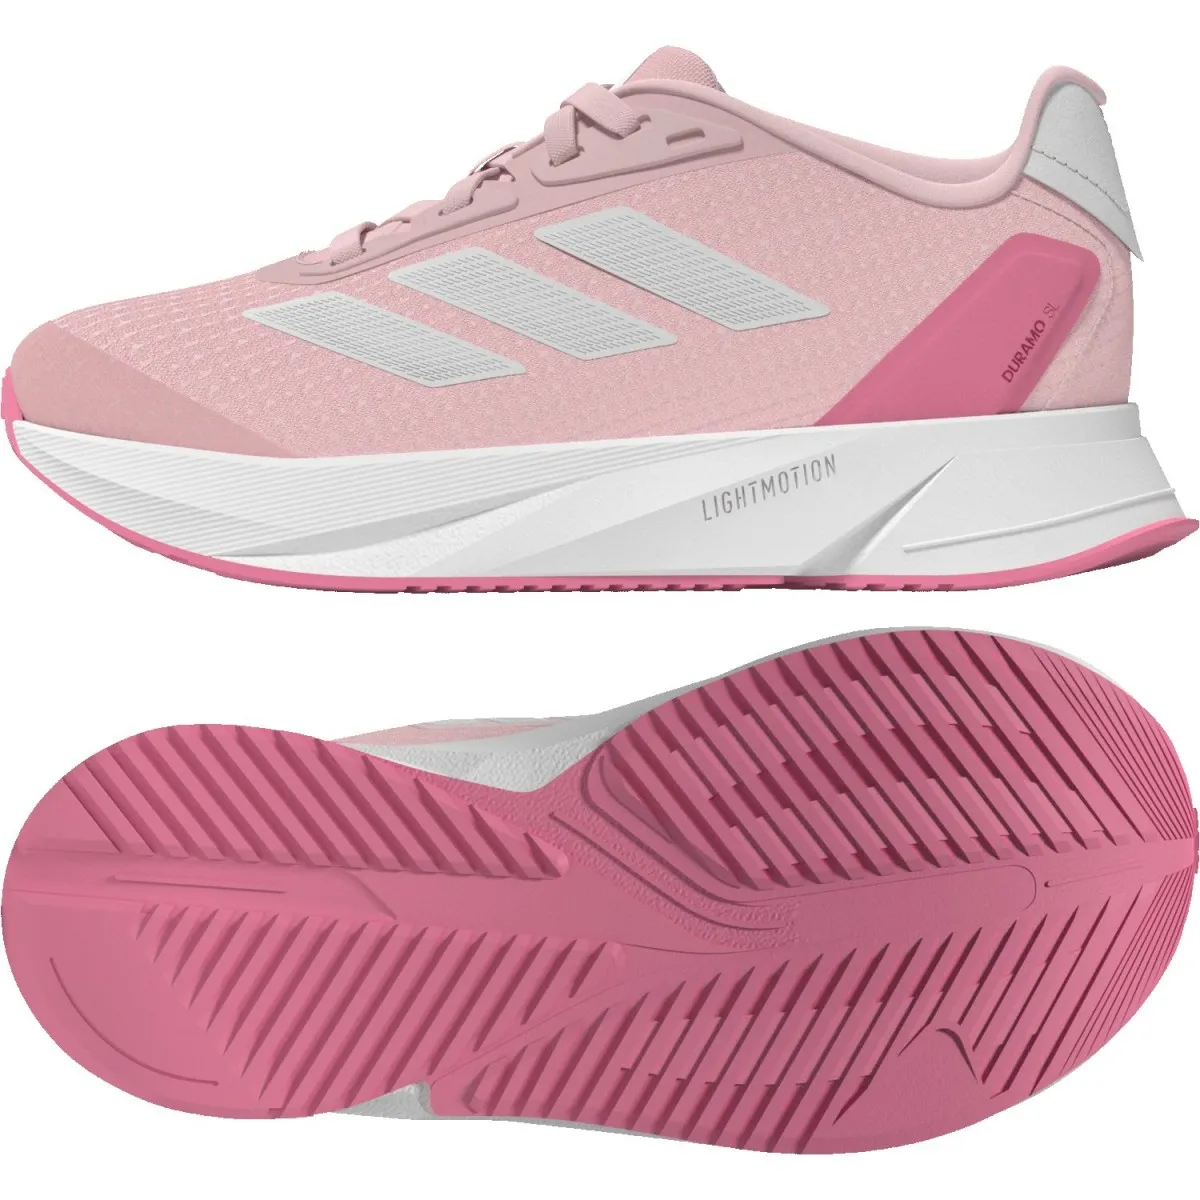 Zapatillas adidas Duramo superlight teen rosa